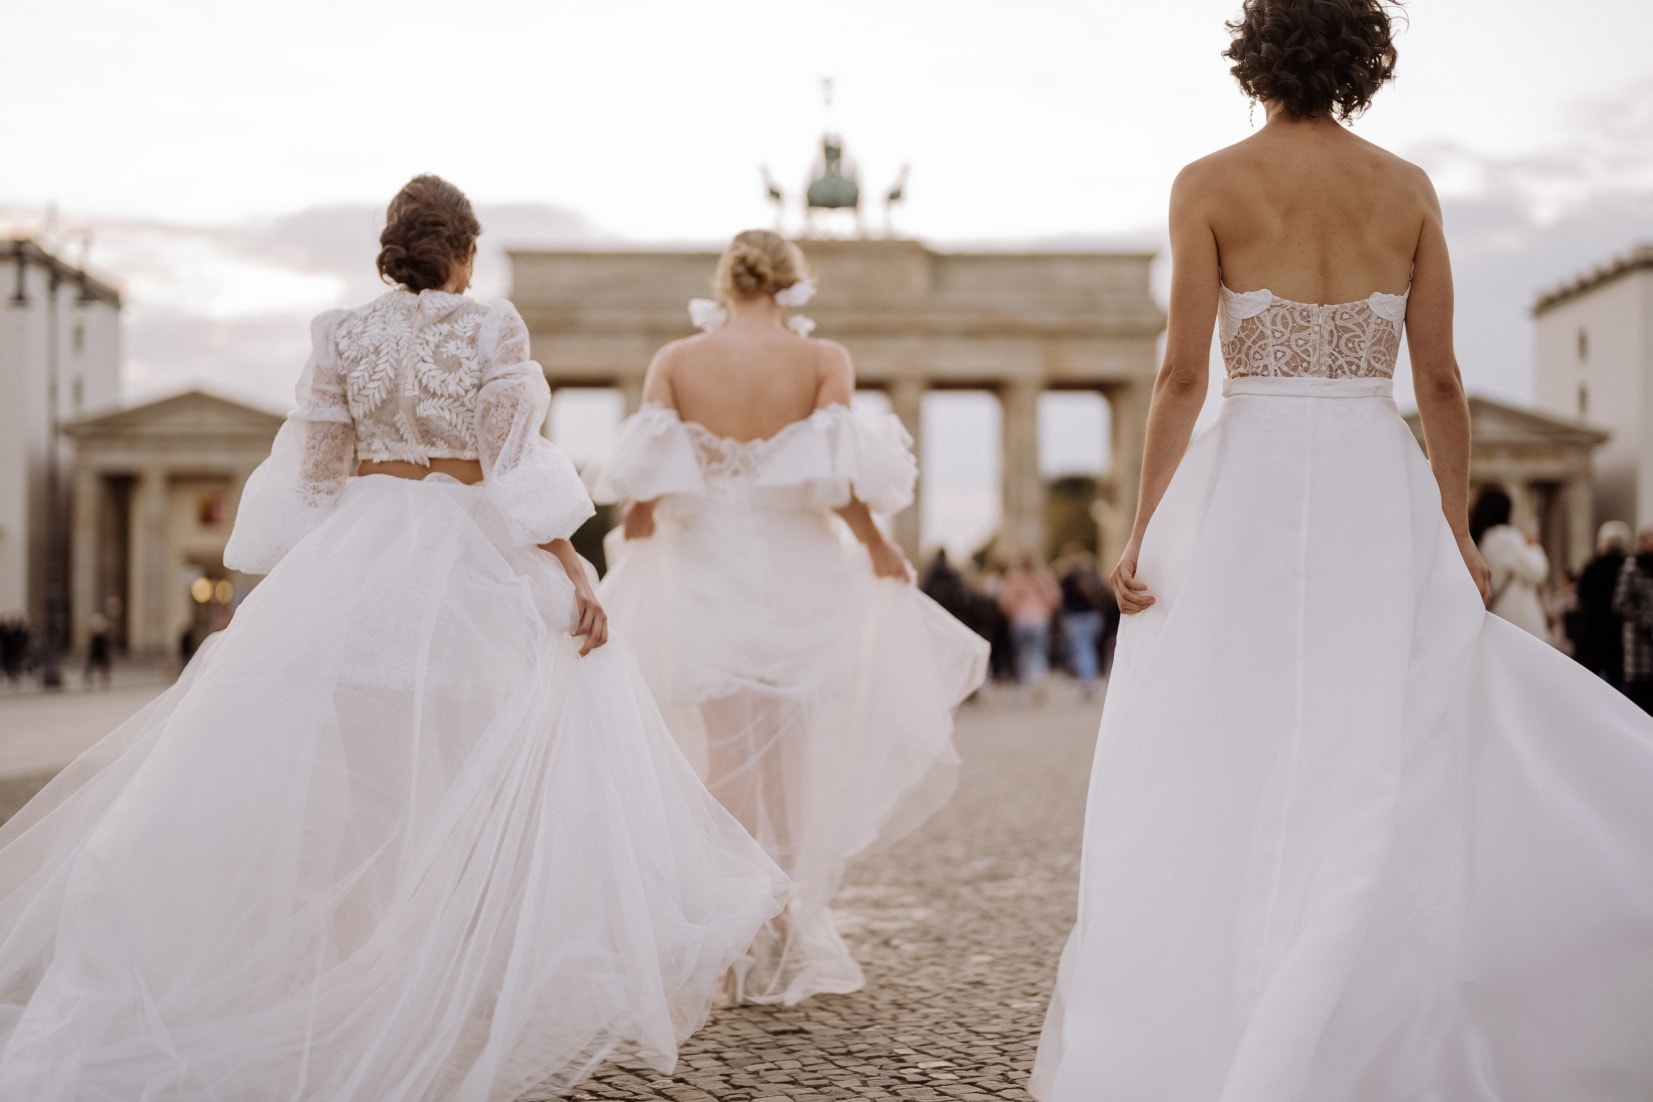 Deutsch: Drei Bräute gehen auf das Brandenburger Tor zu Englisch: Three brides walking towards the Brandenburg Gate